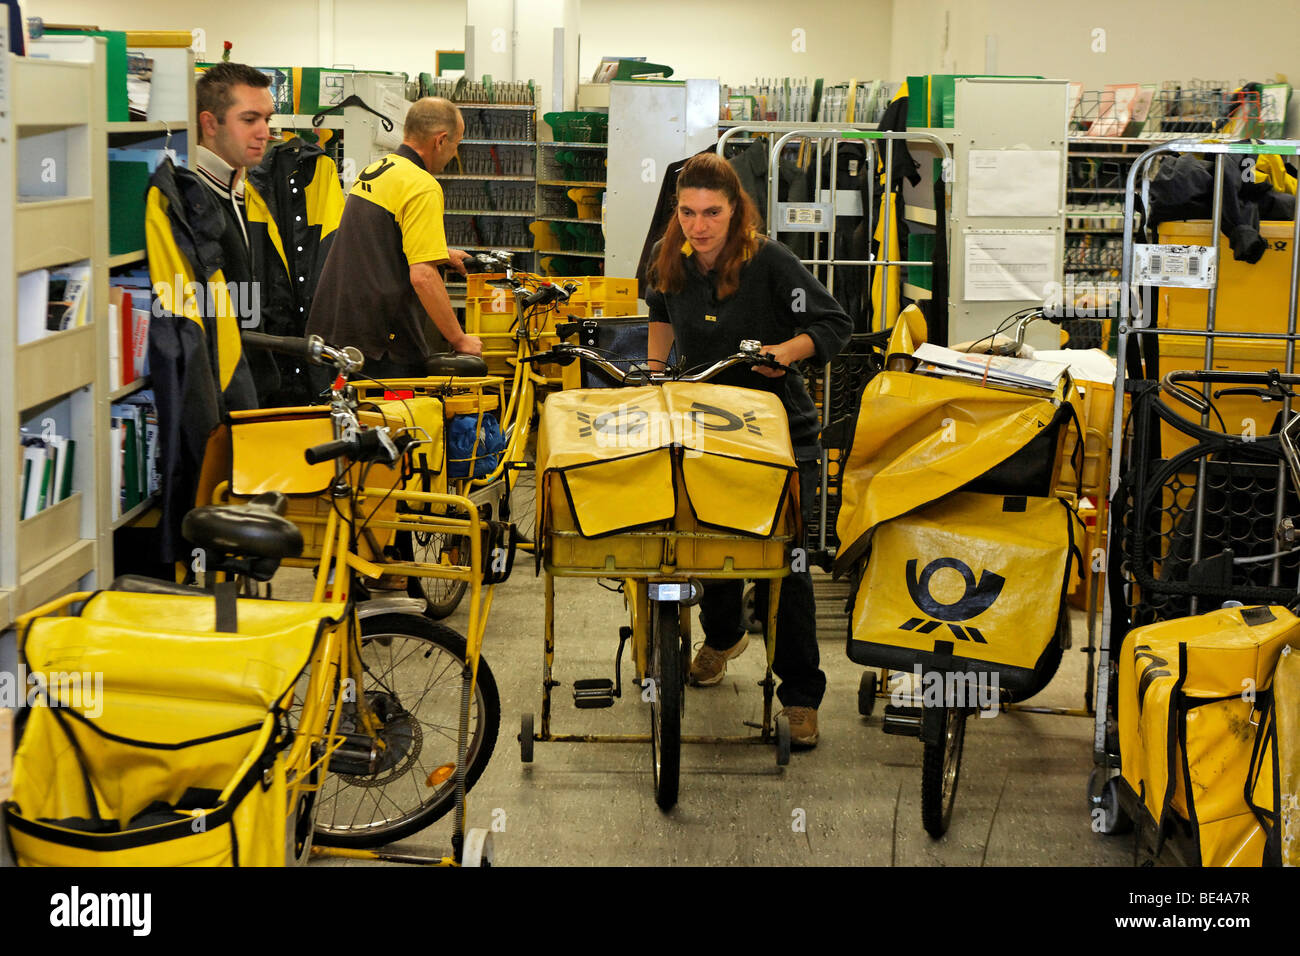 Mail carrier Annerose Schulze pousse son vélo dans le centre de distribution du service postal de la poste allemande Deutsche Post AG Banque D'Images